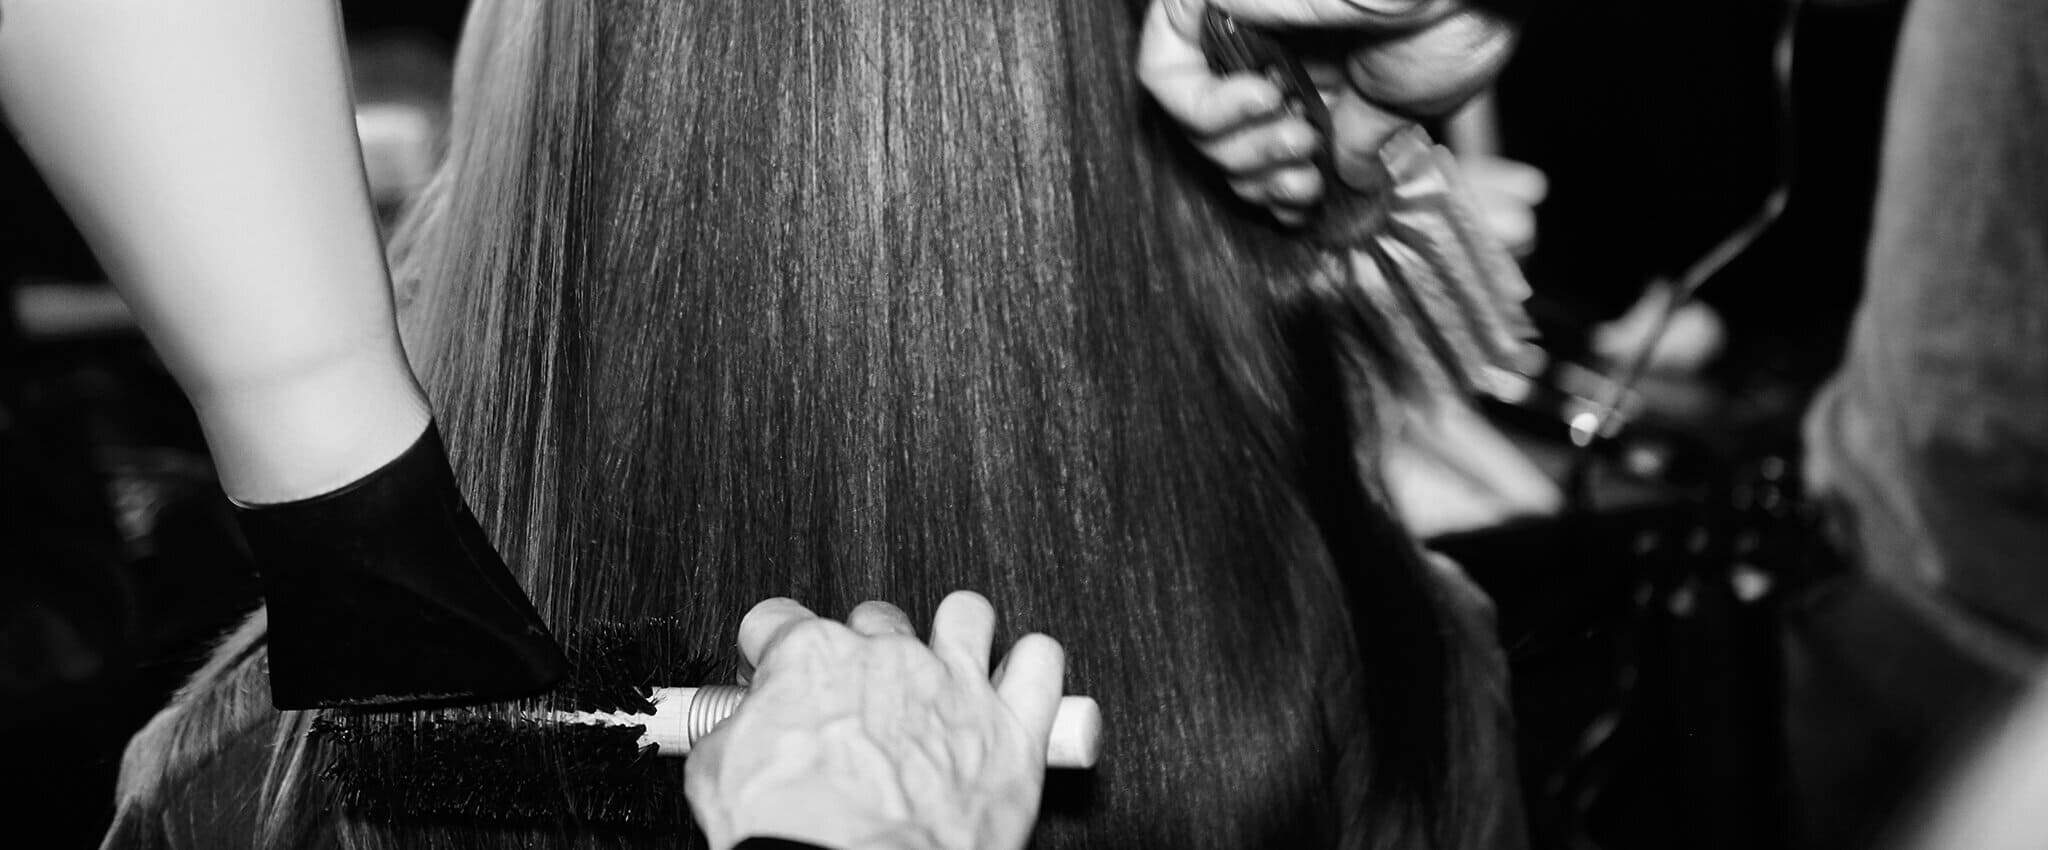 Dos estilistas usan un cepillo y un secador para peinar el pelo de una mujer.